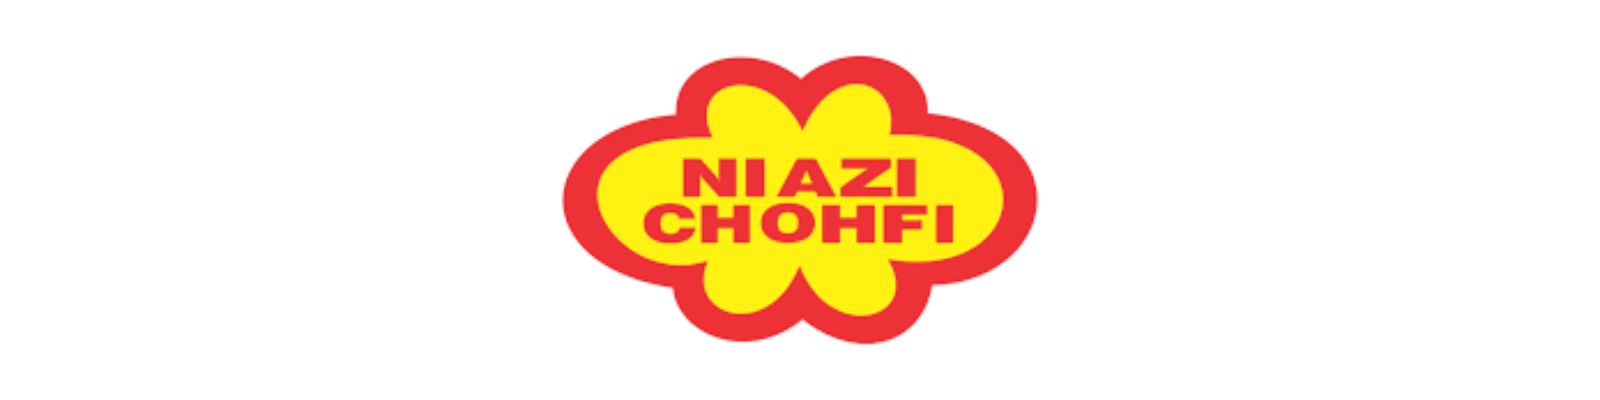 WhatsApp Niazi Chohfi: Saiba como entrar em contato com a empresa!